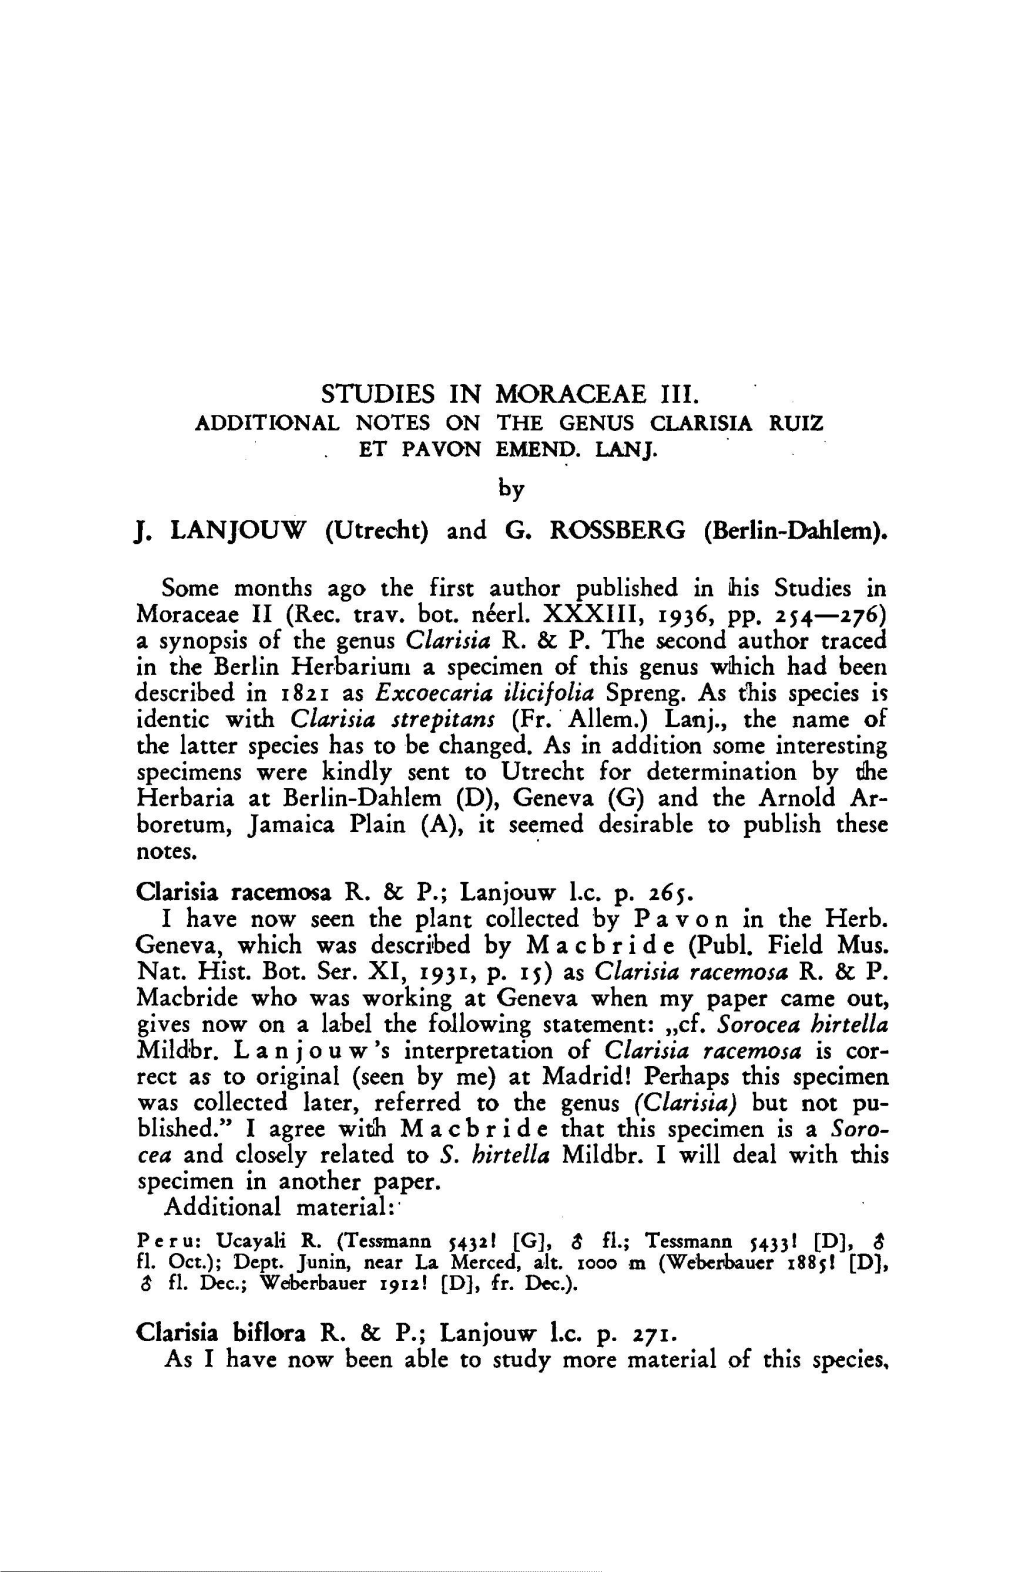 Studies in Moraceae III. Additional Notes on the Genus Clarisia Ruiz Et Pavon Emend